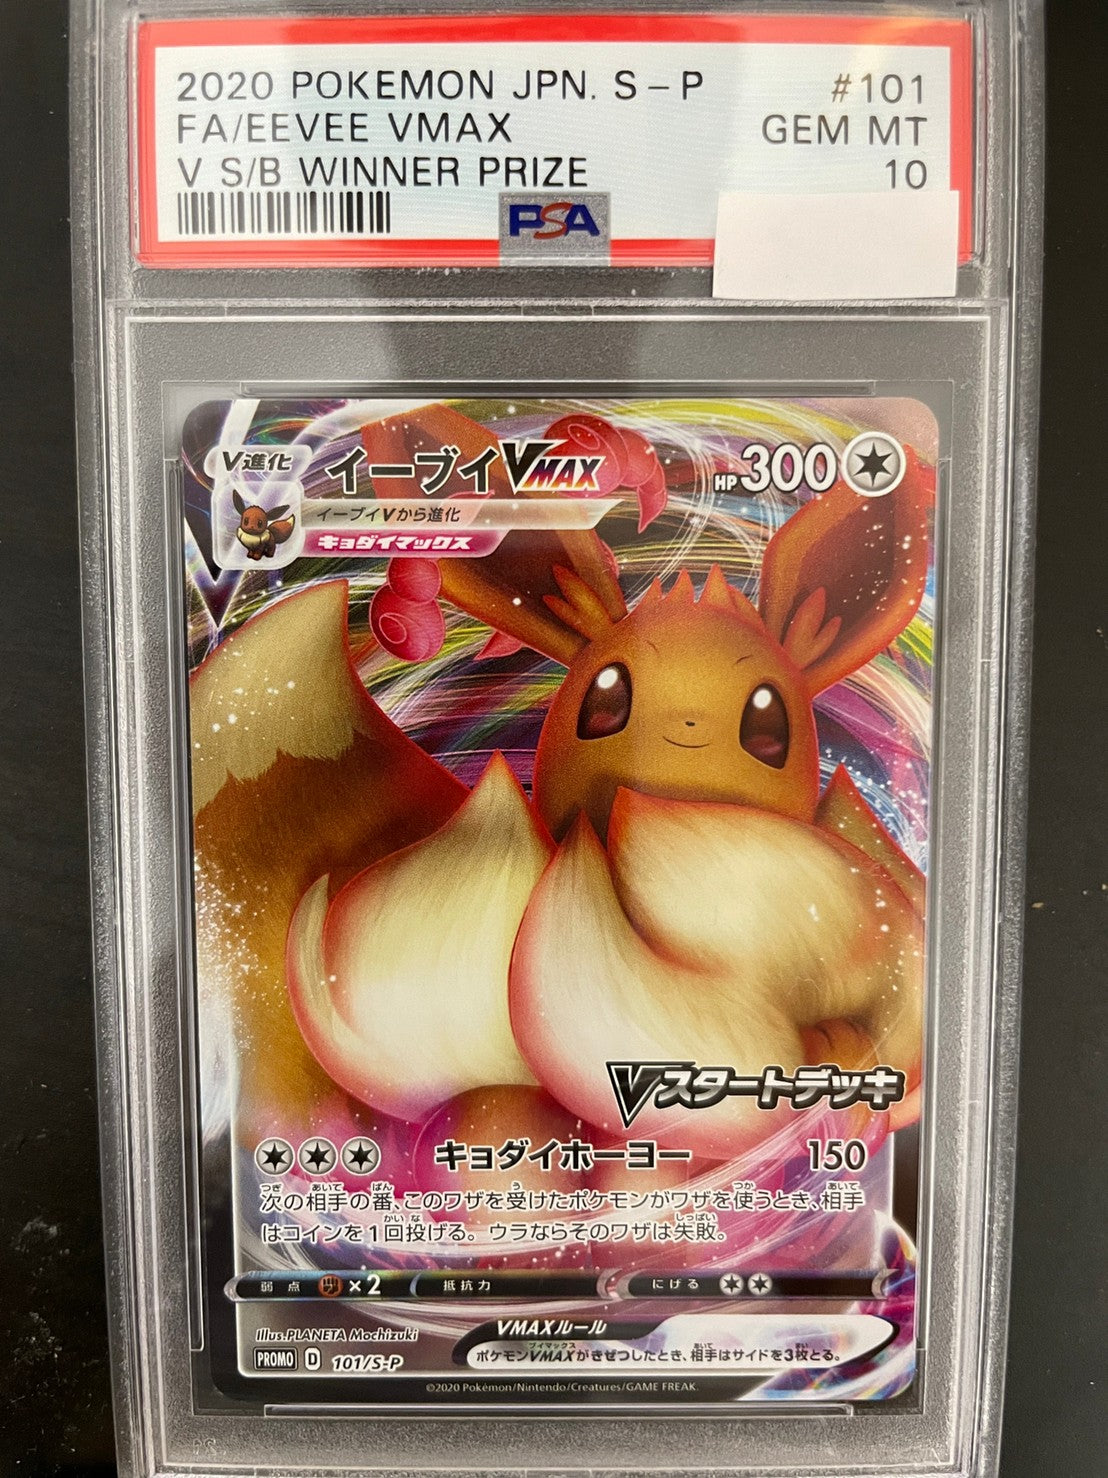 PSA10 2020 Pokemon FA Eevee Vmax 101/S-P